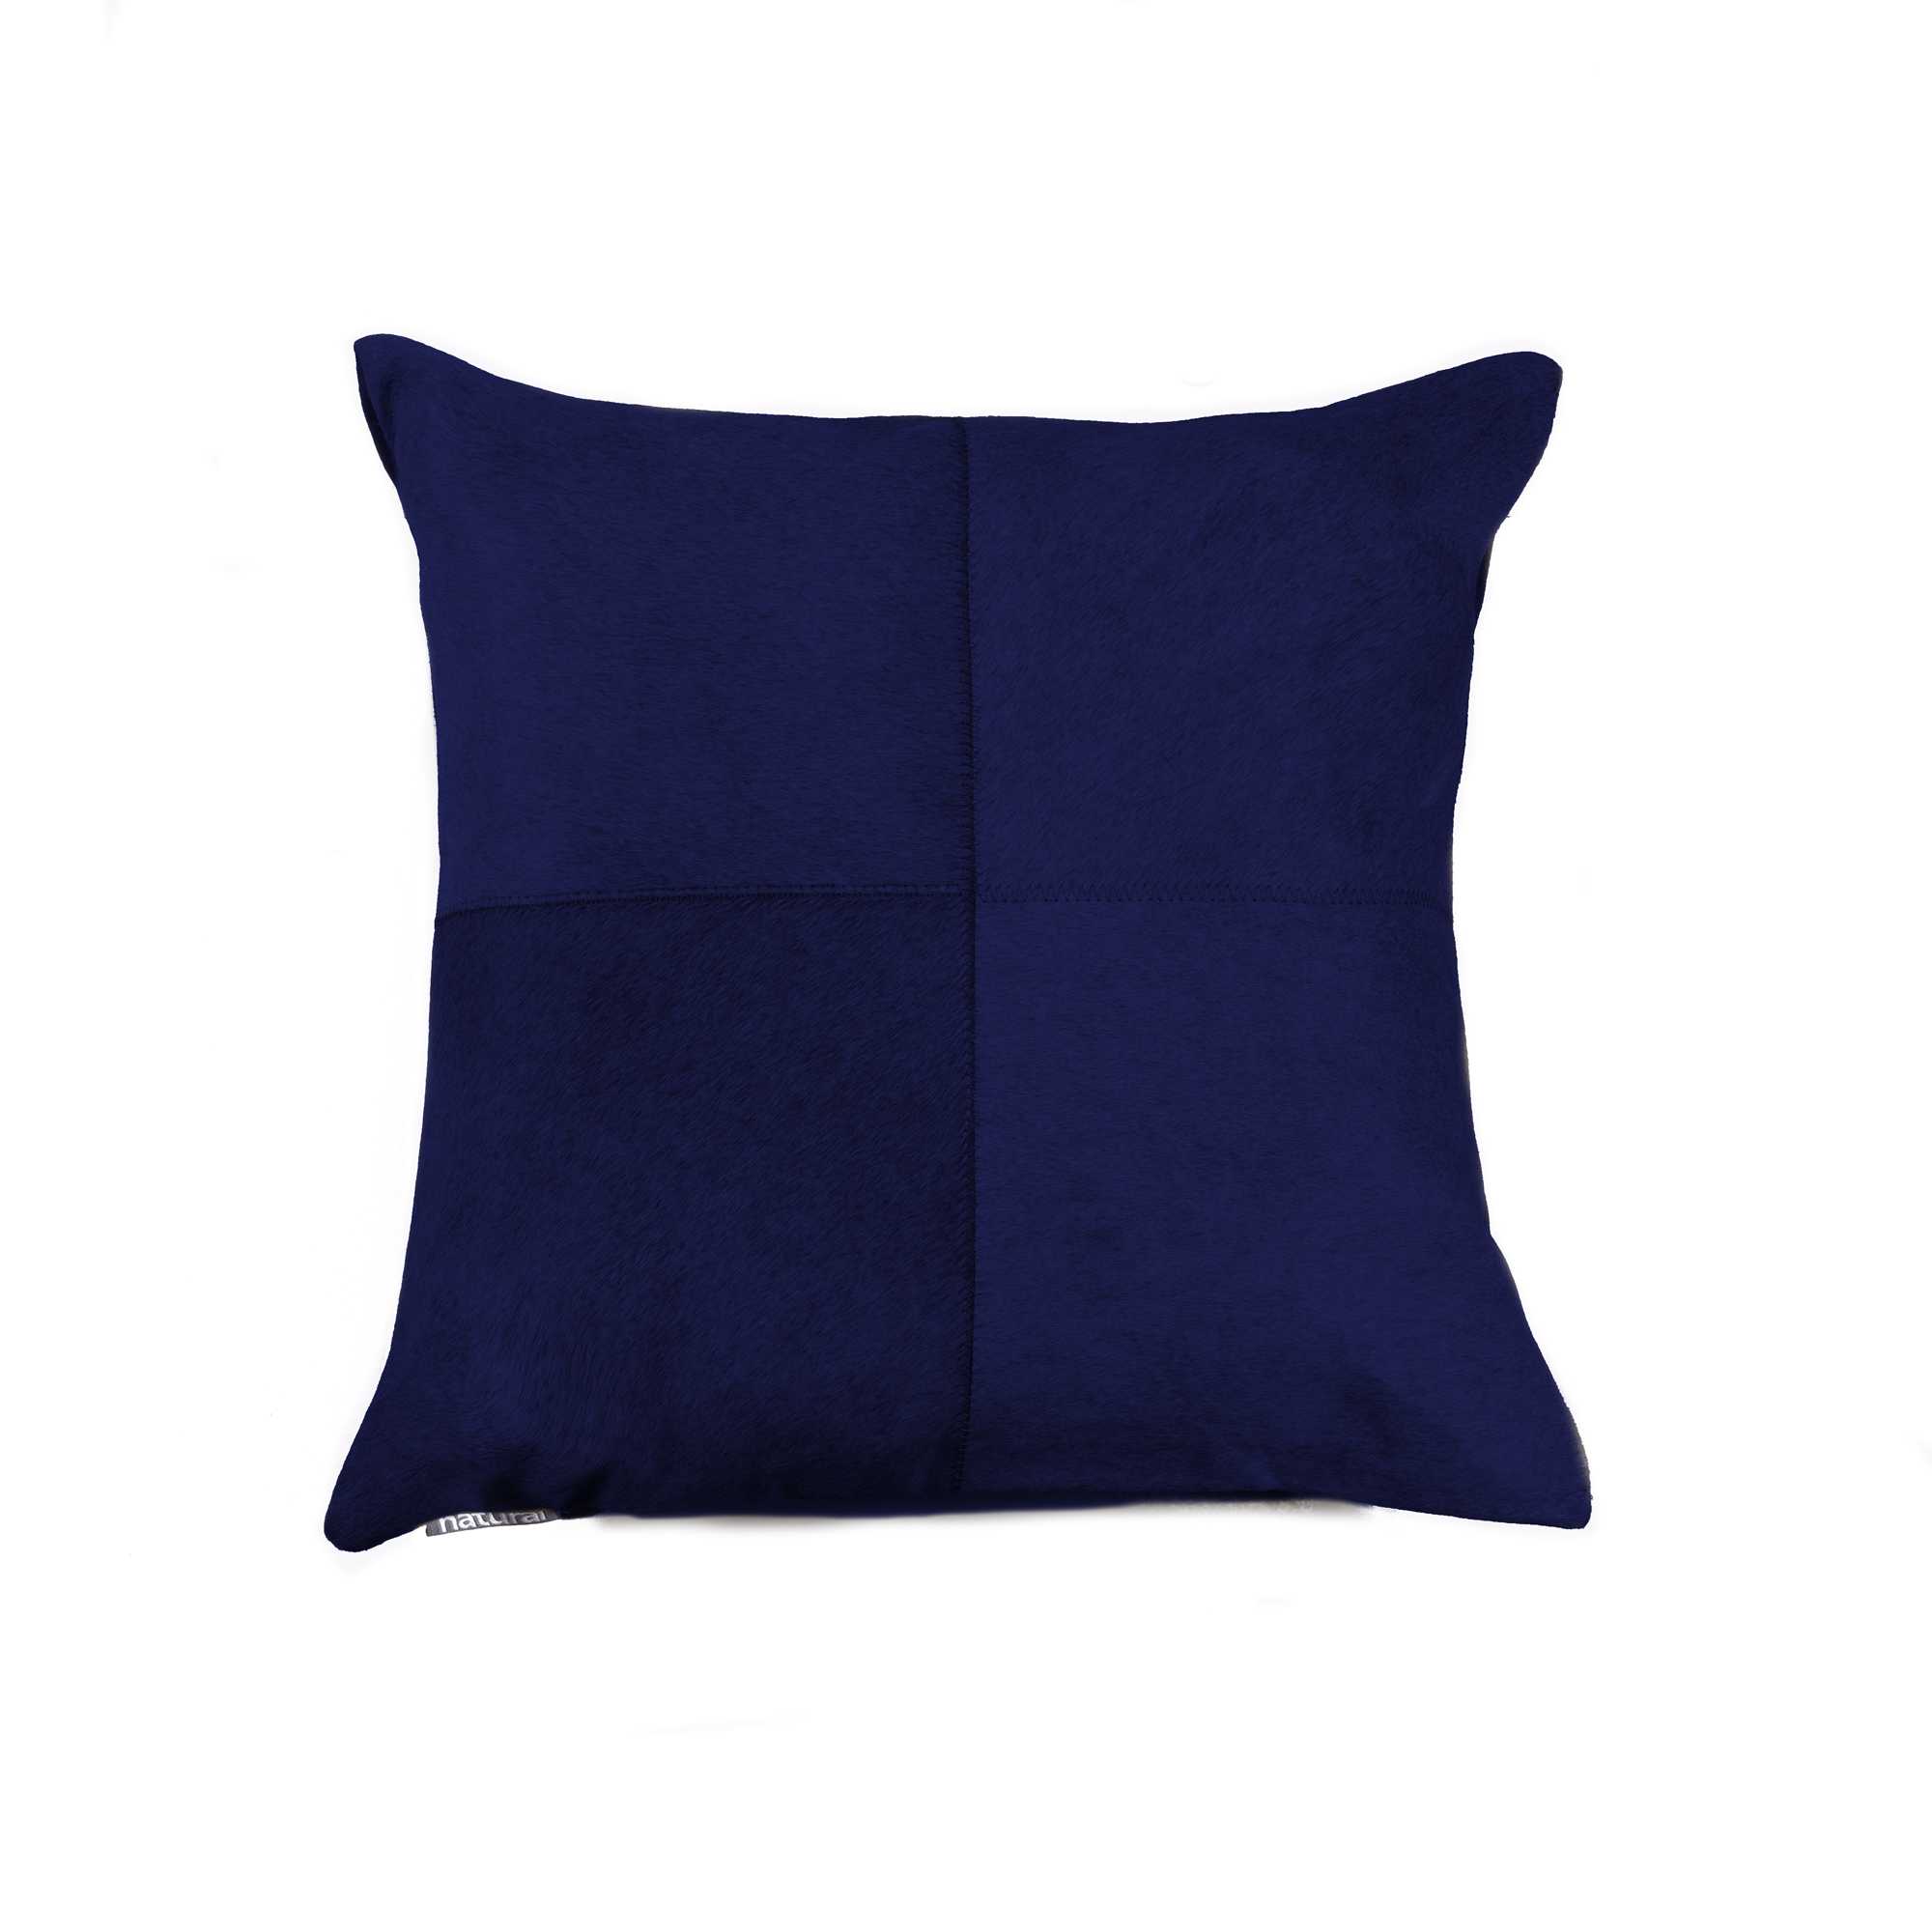 18" x 18" x 5" Navy - Pillow